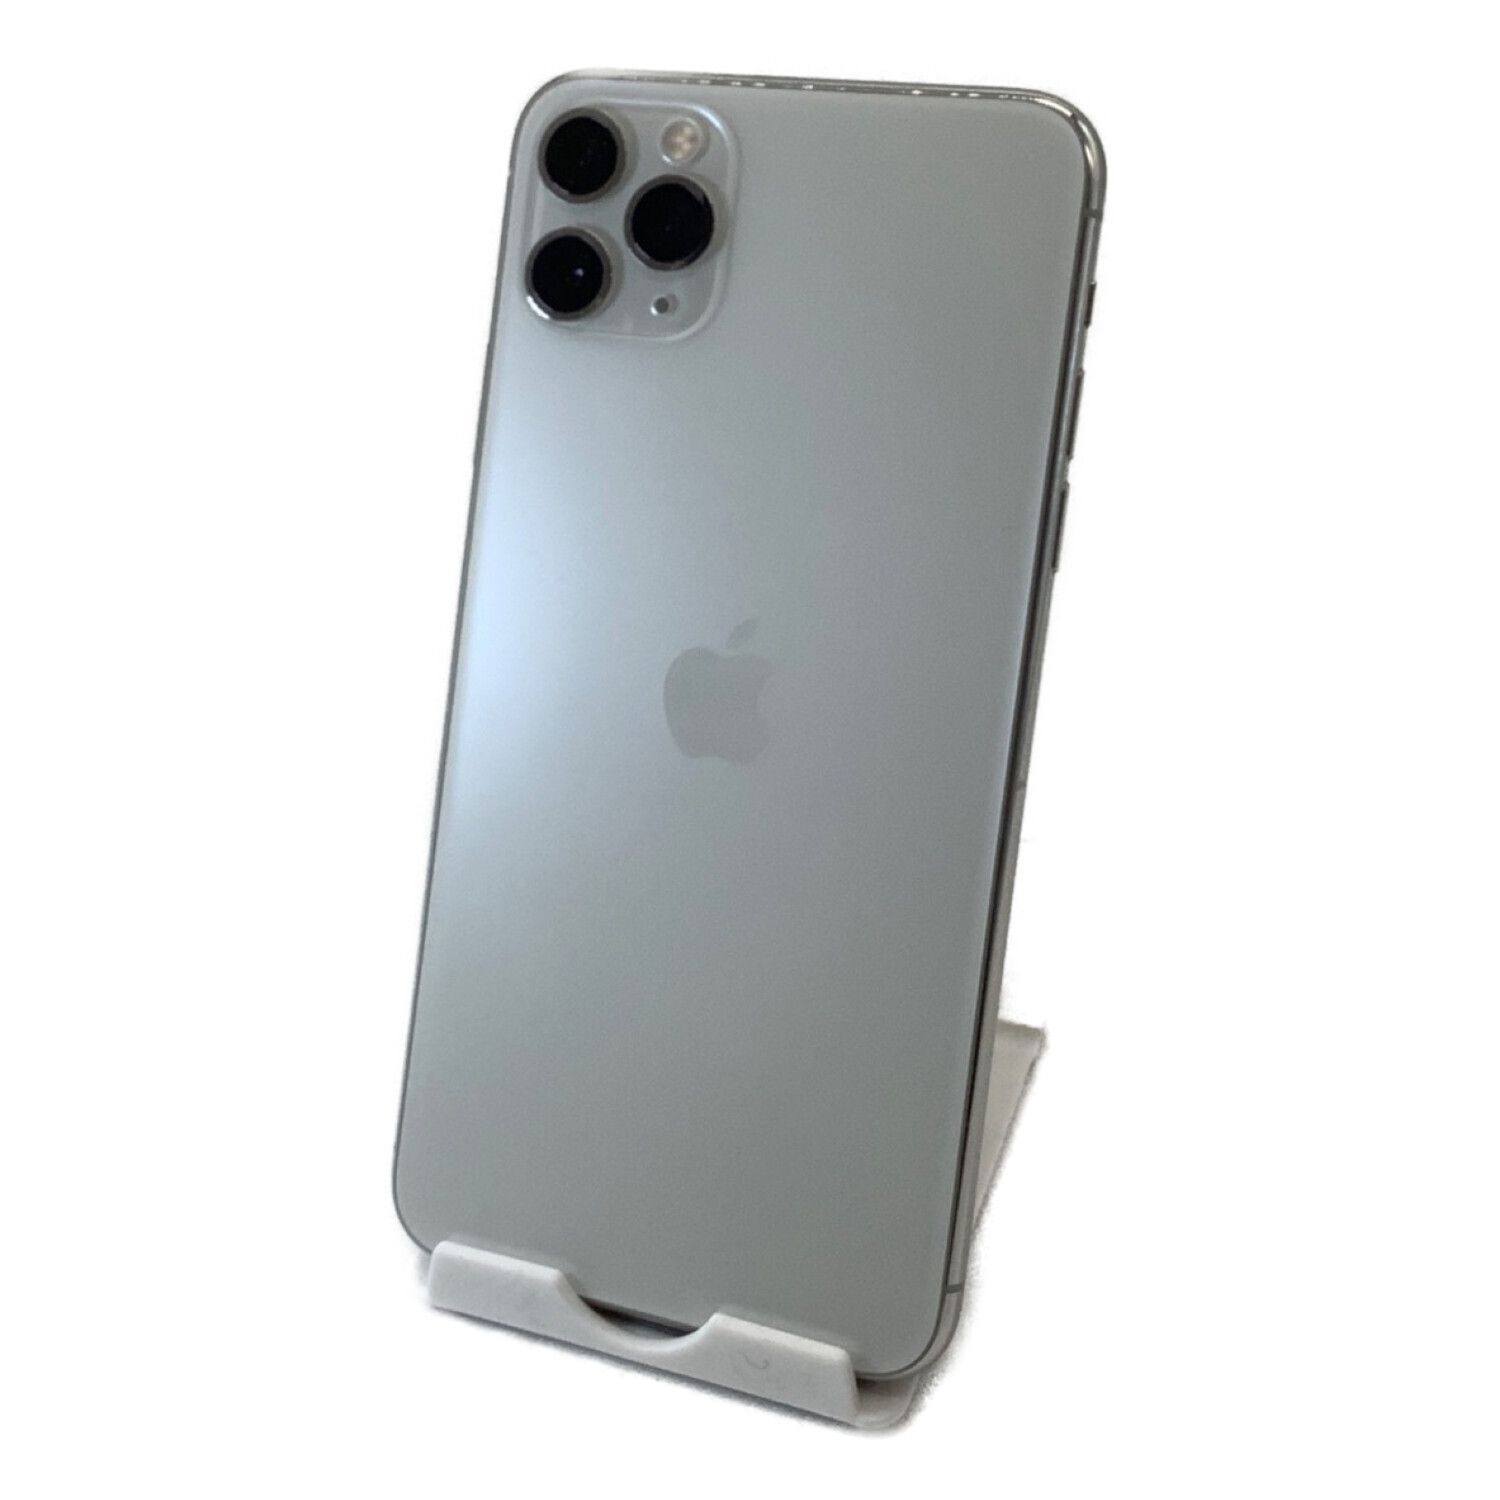 Apple (アップル) iPhone11 Pro Max MWHK2J/A サインアウト確認